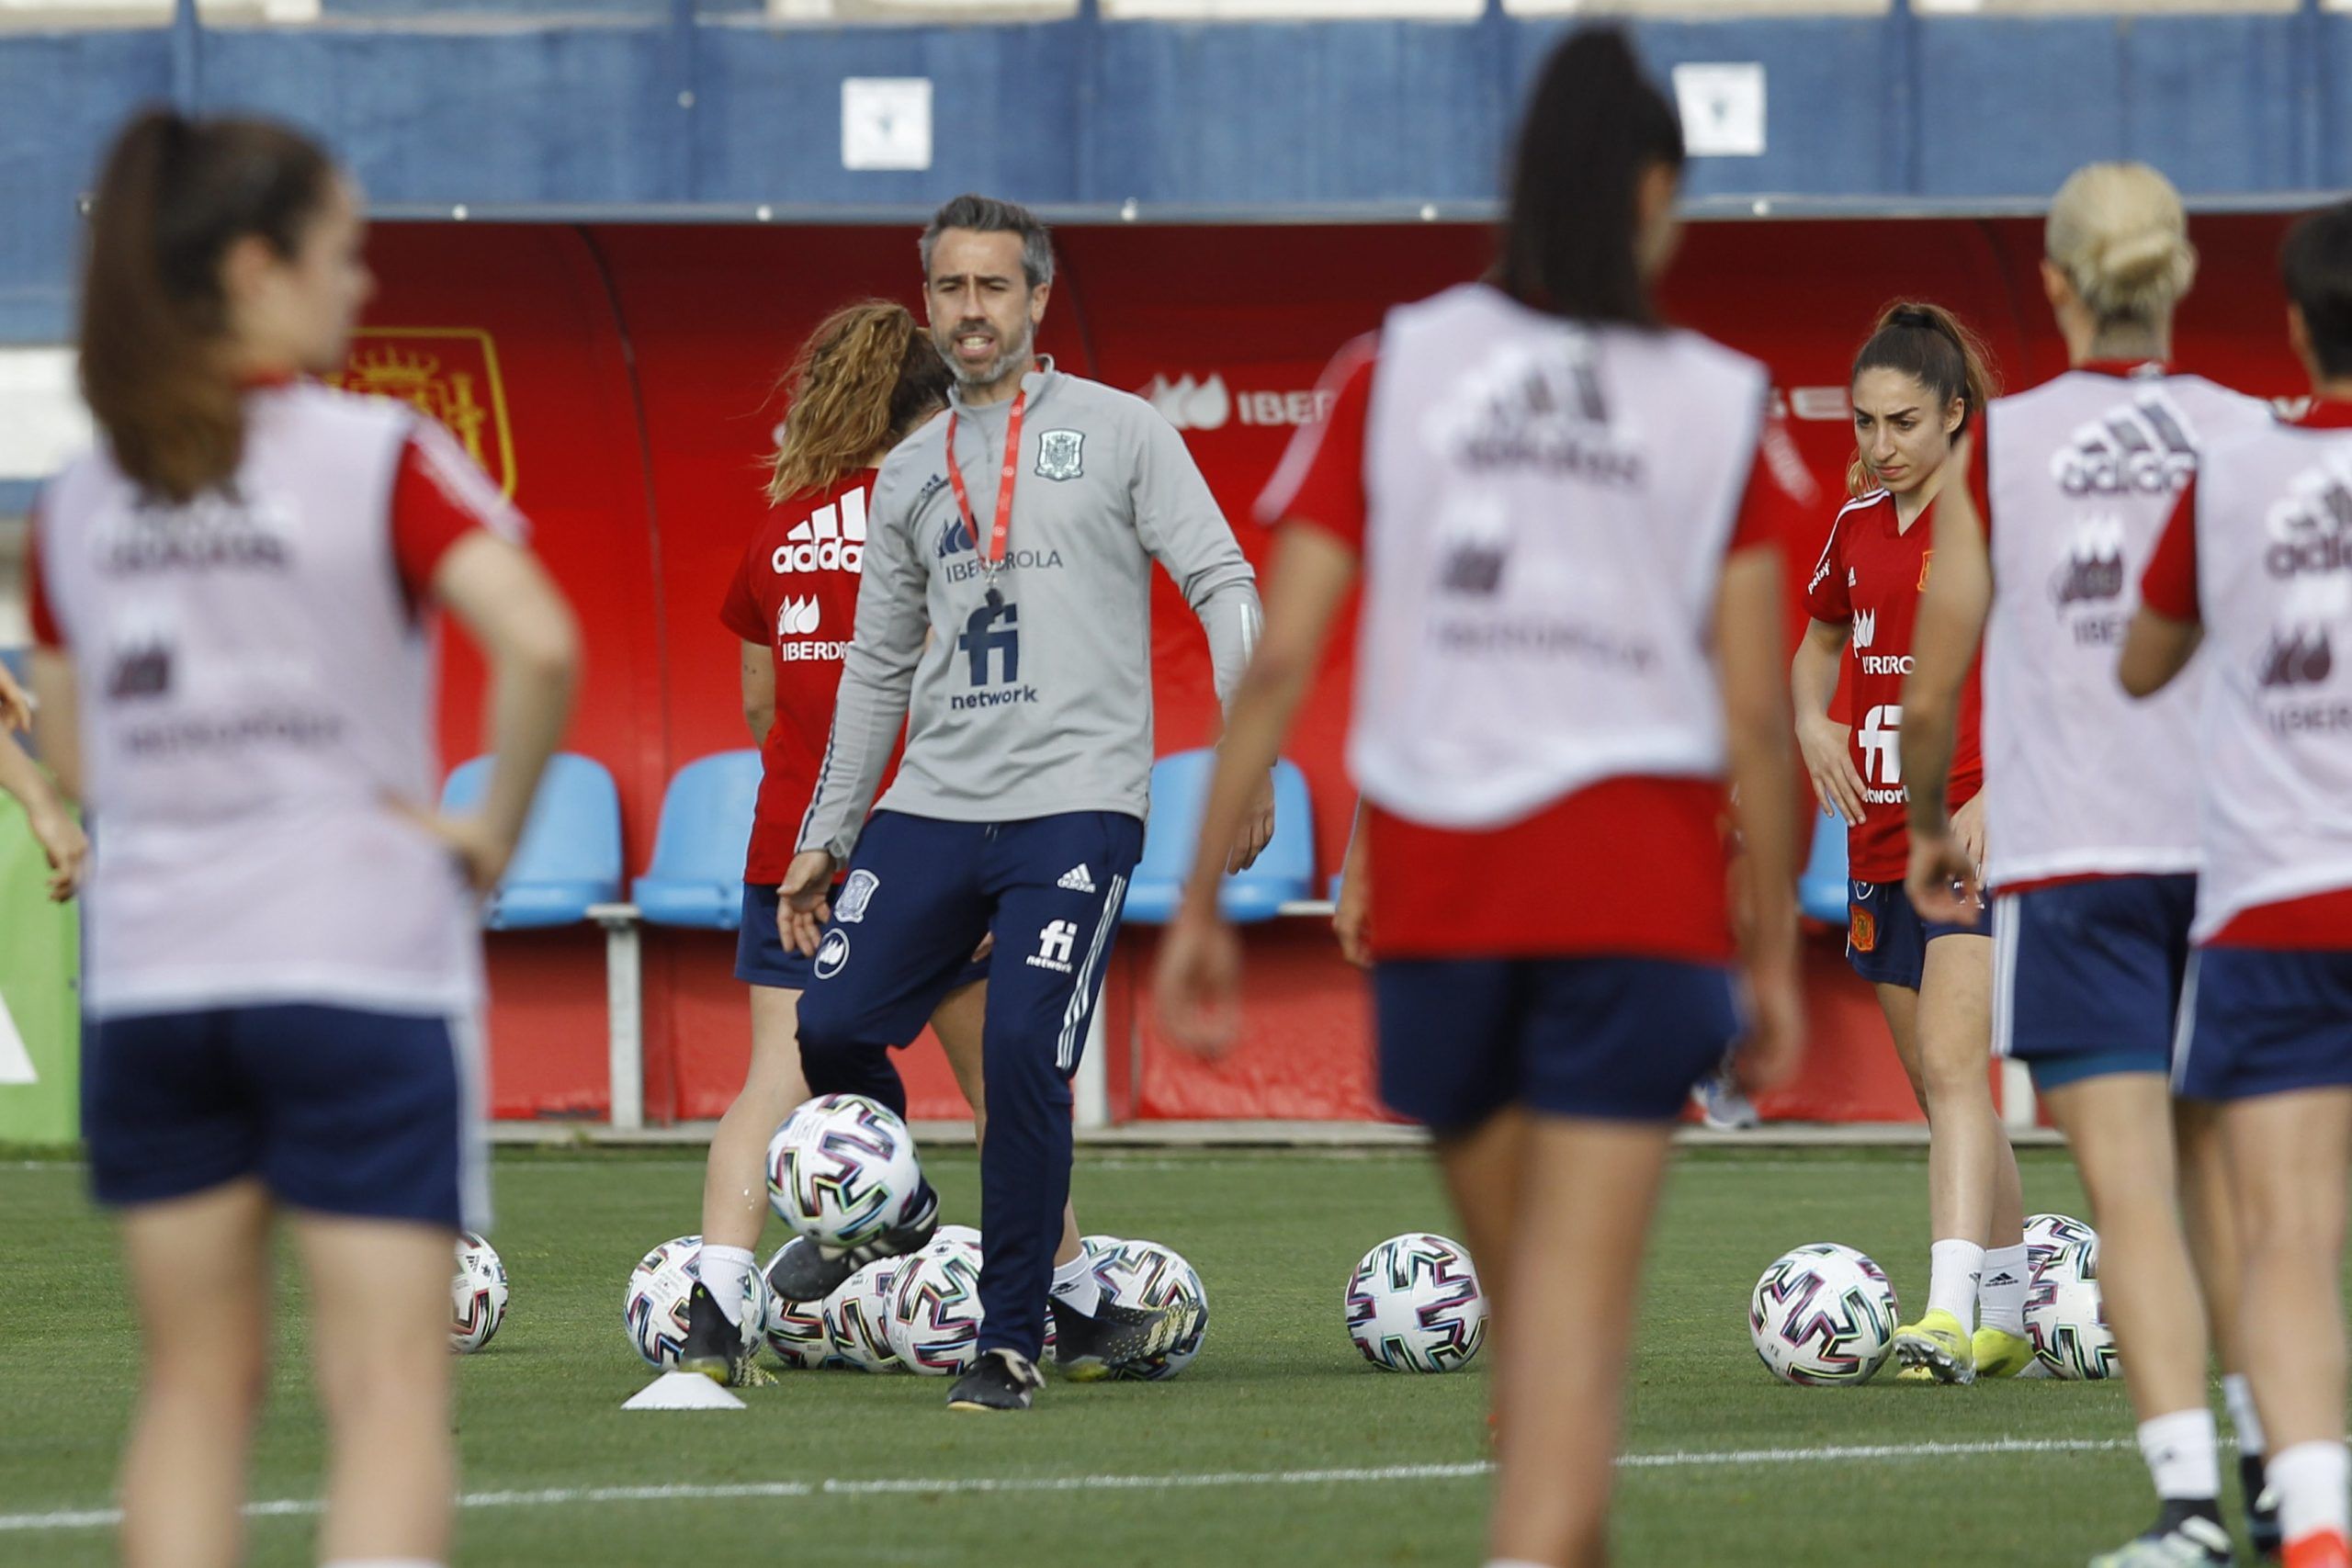 La Selección Española Femenina jugará en Alcorcón